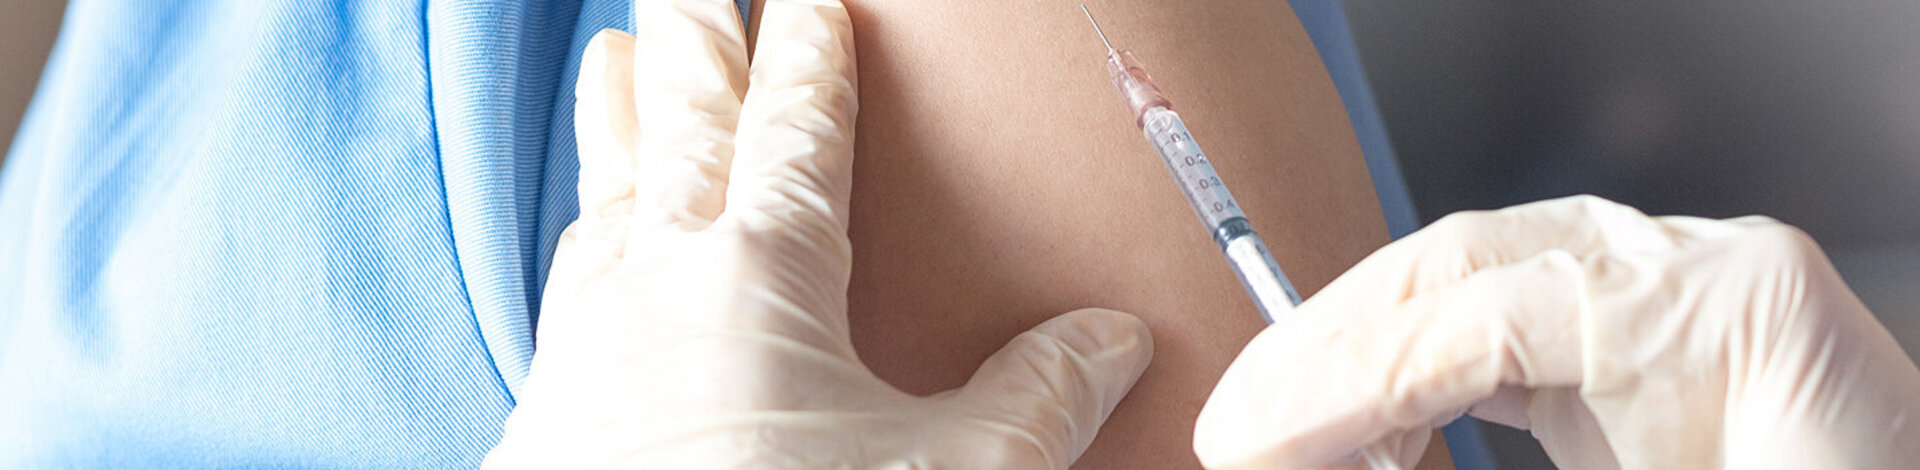 Eine junge Frau wird geimpft. Es gibt spezielle HPV-Impfstoffe, um das Risiko von Gebärmutterhalskrebs zu minimieren. 